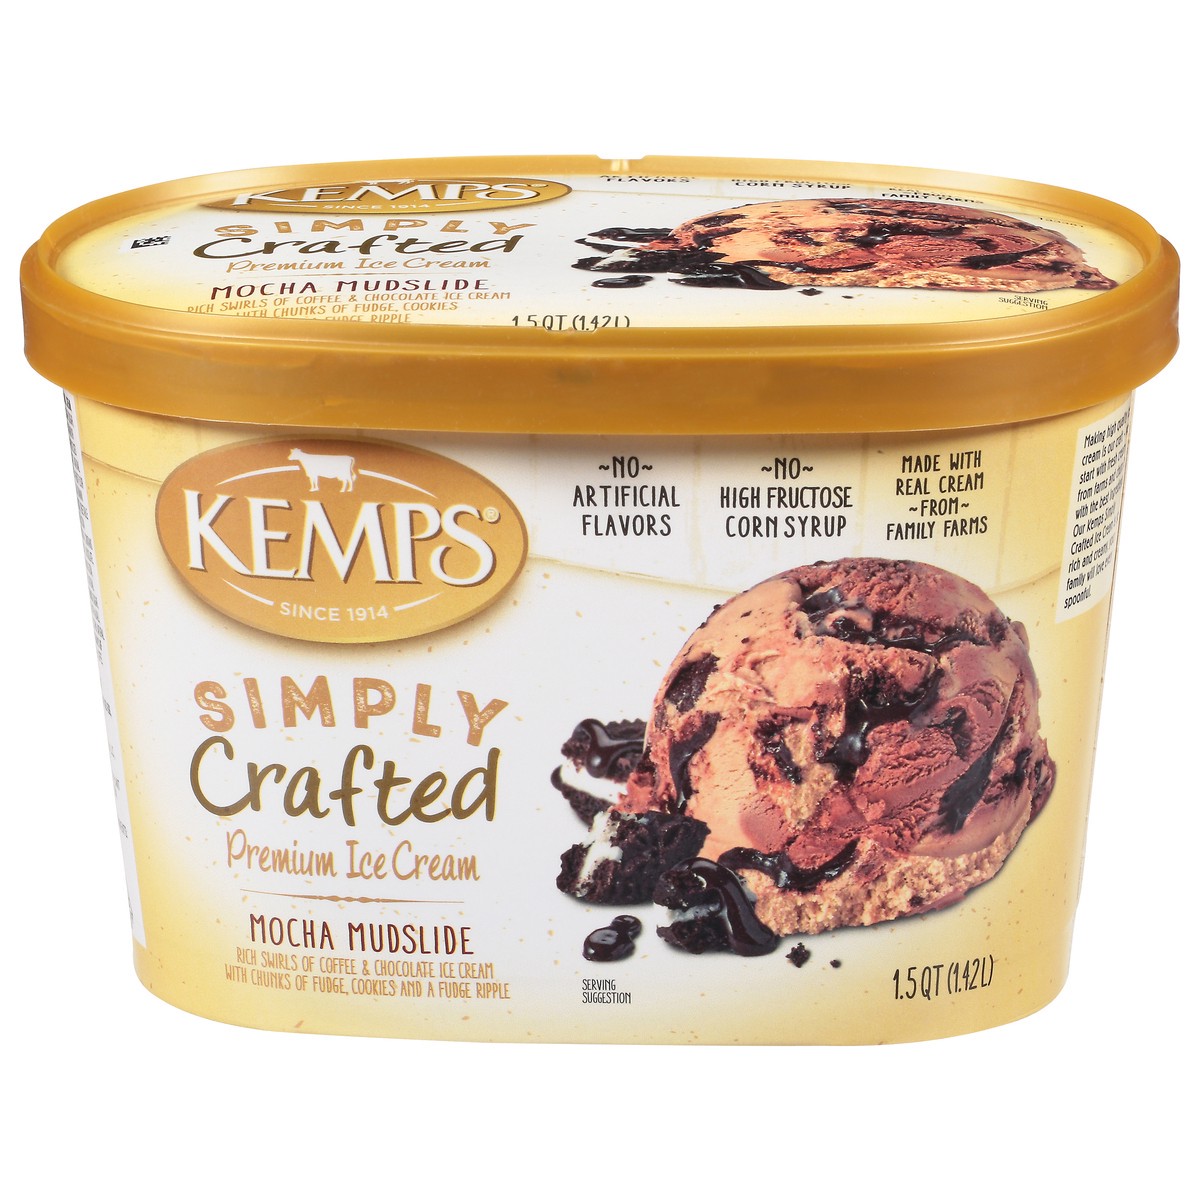 slide 1 of 14, Kemps Simply Crafted Premium Mocha Mudslide Ice Cream 1.5 qt, 1.5 qt